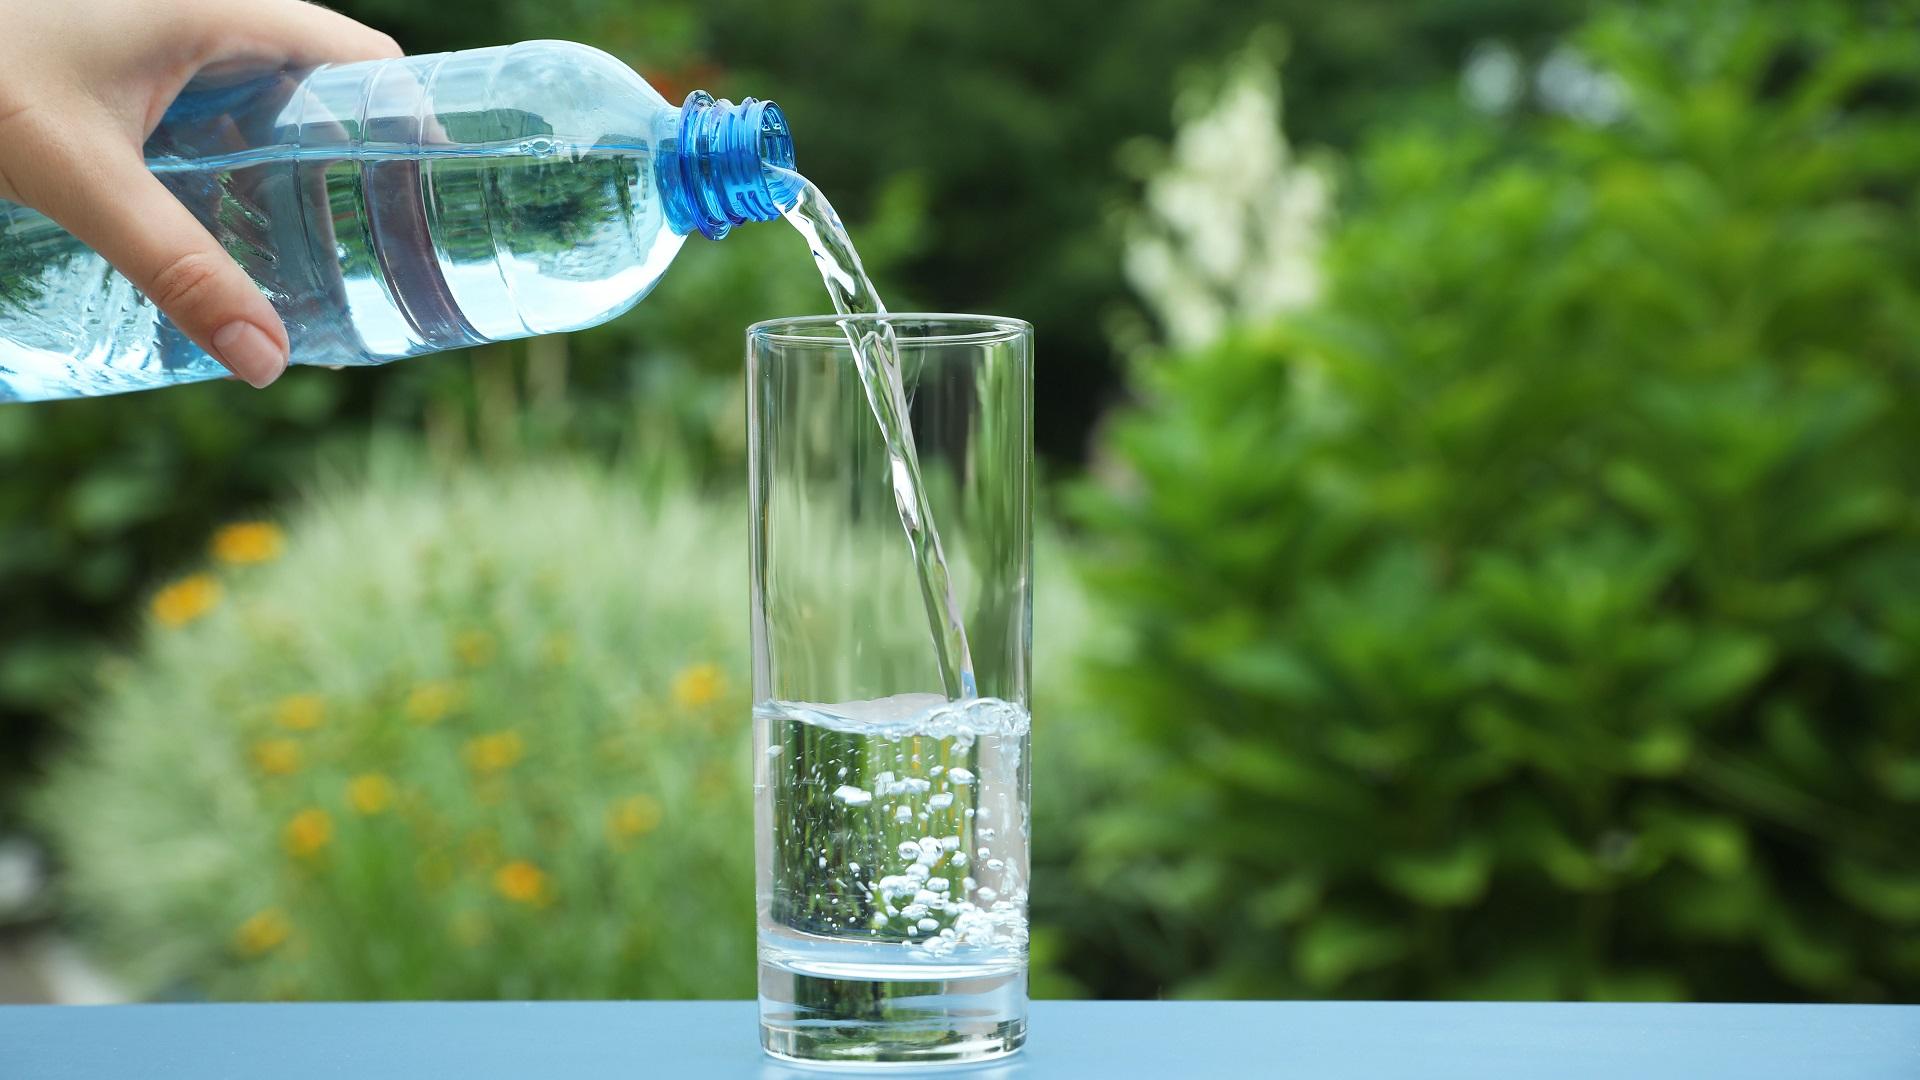 Jätevesijärjestelmän hintavertailua helpottavat puolueettomat vertailut ja käyttötutkimukset jätevesijärjestelmistä. (Kuva: Pixabay)